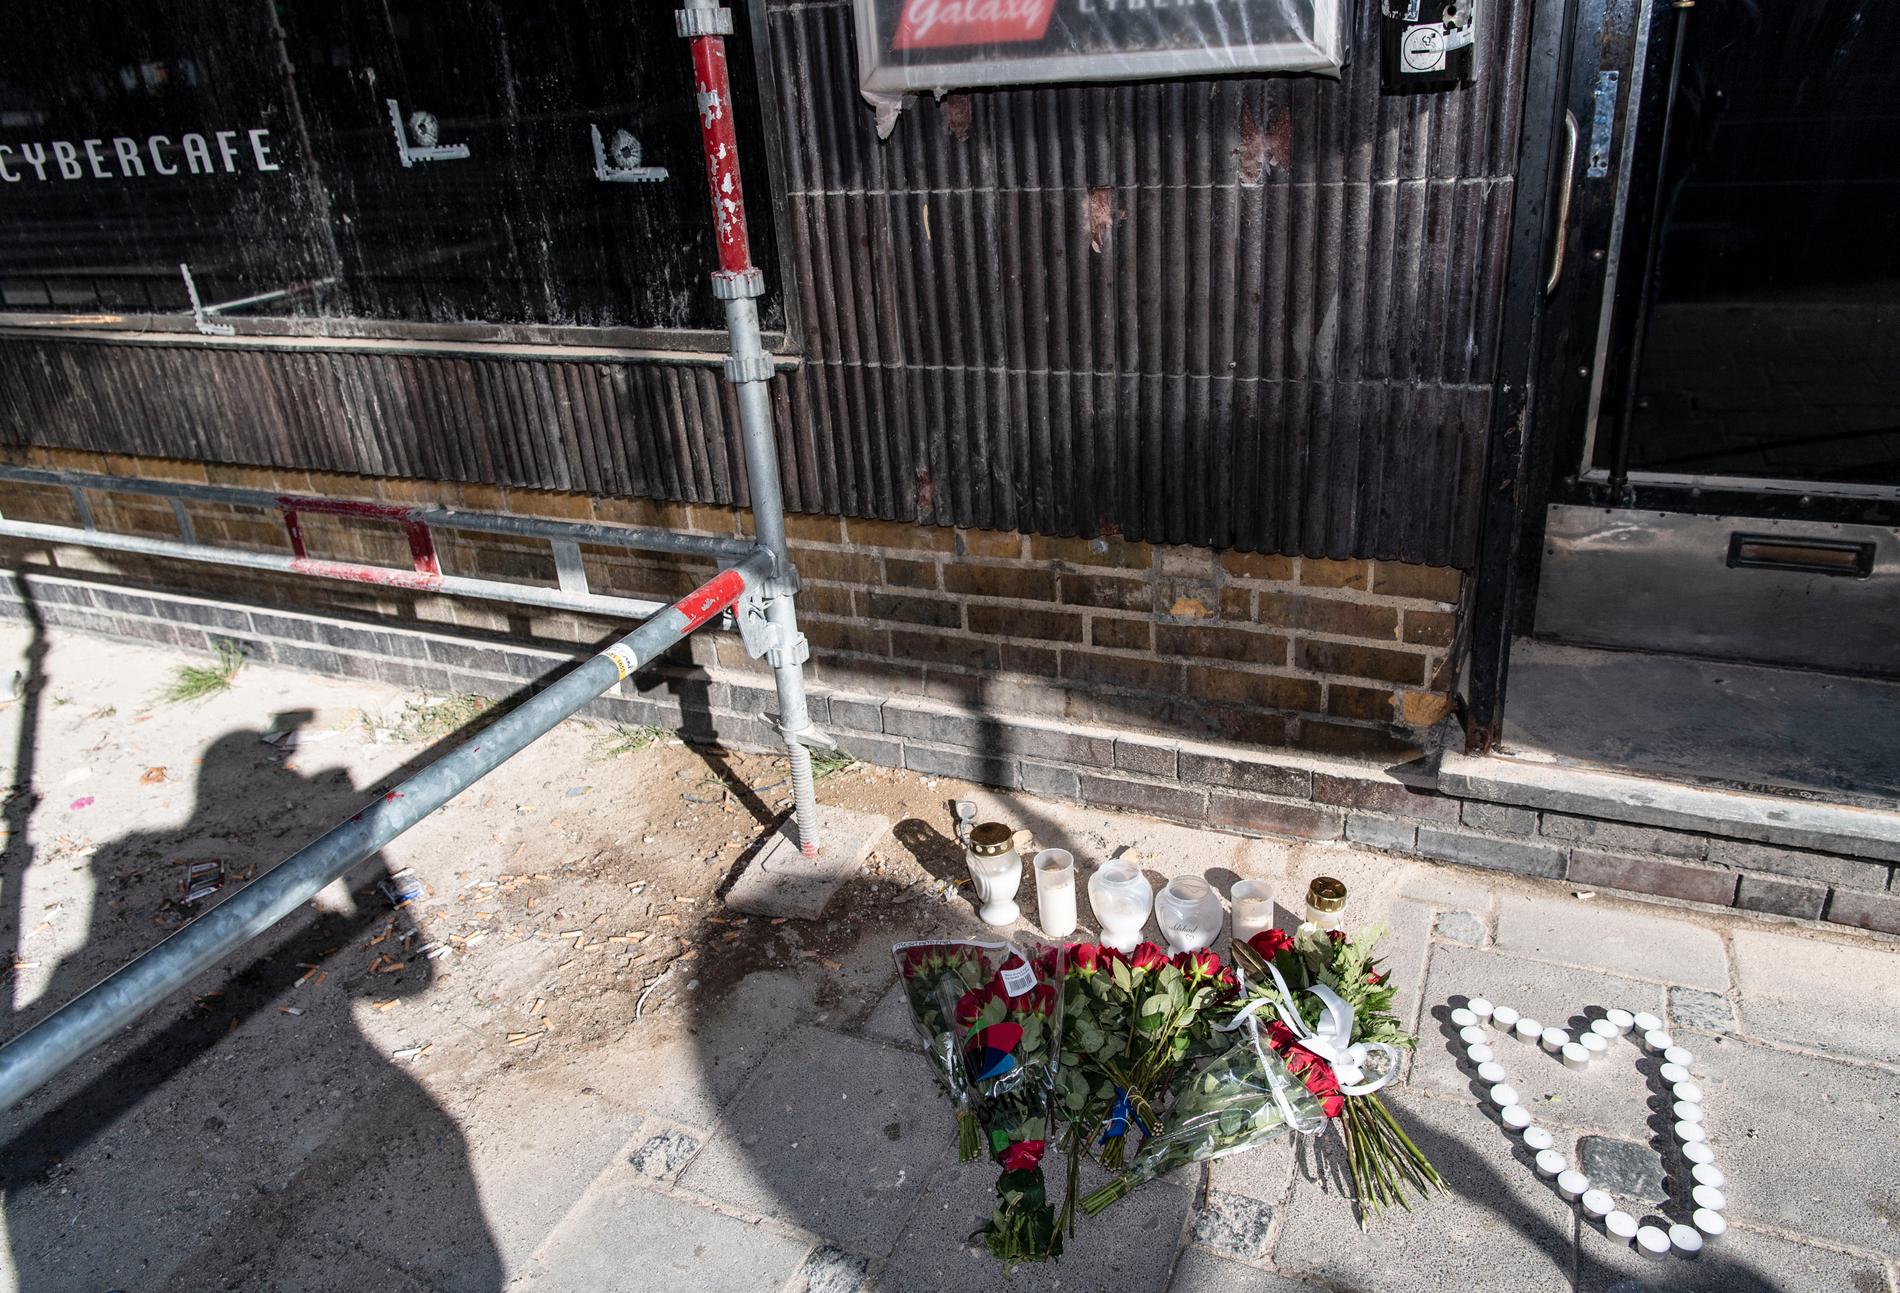 Blommor och ljus har placerats ut där tre gängkriminella män sköts ihjäl och tre andra skadades i måndags kväll.